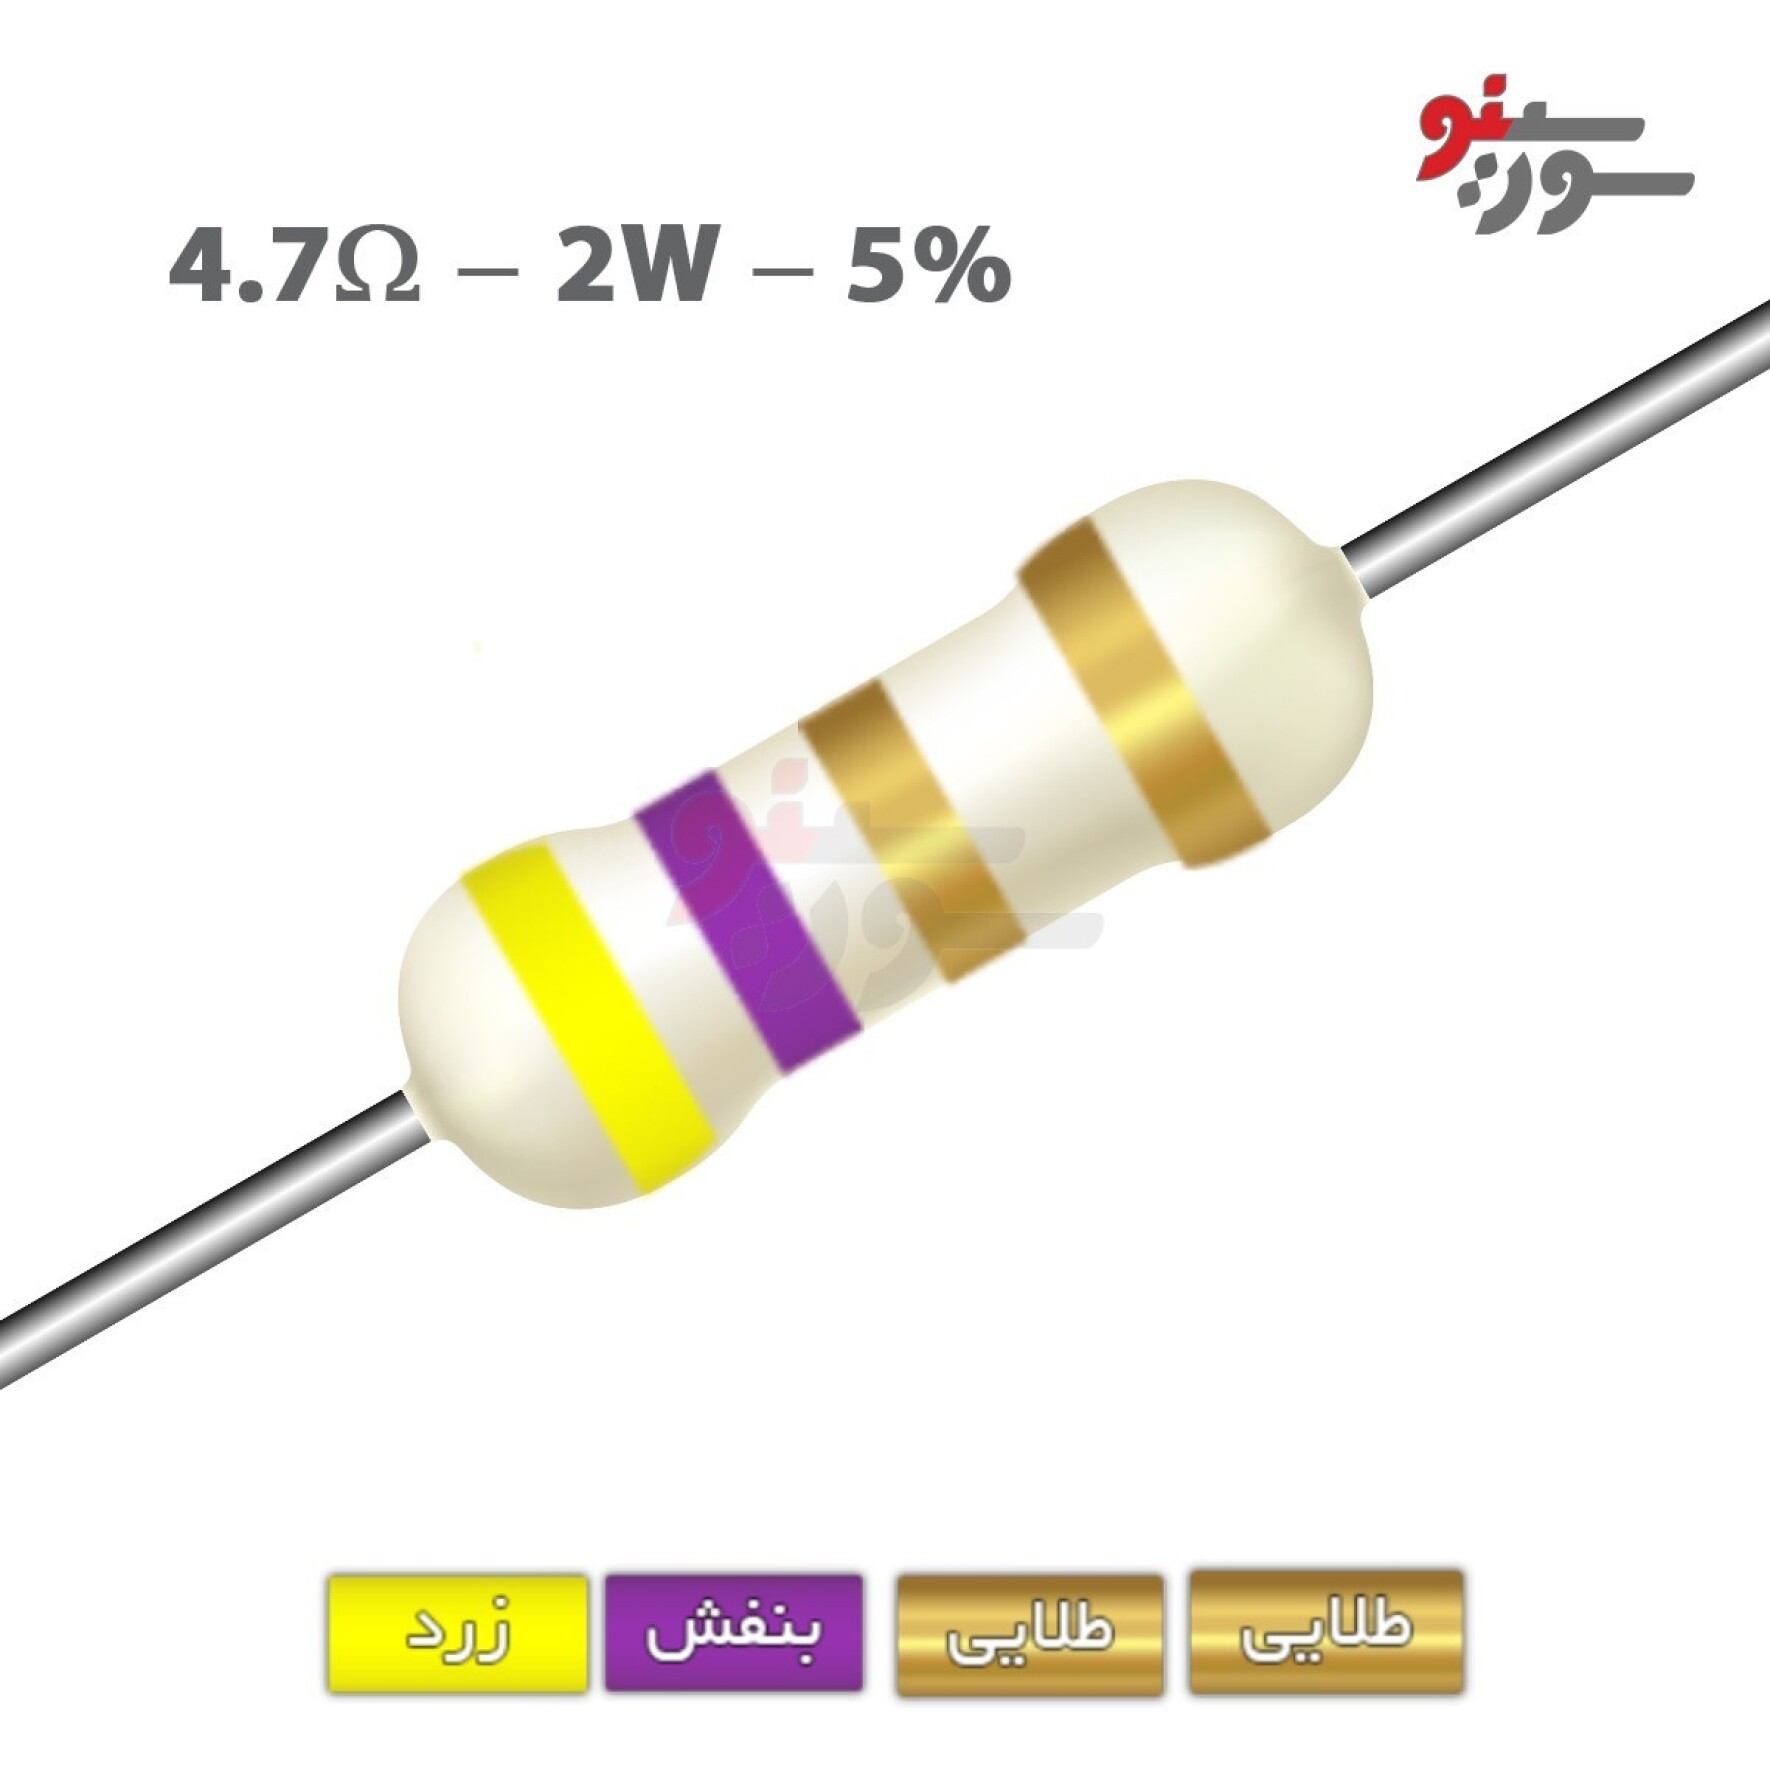 مقاومت 4.7 اهم 2 وات (4R7-2W-5%)